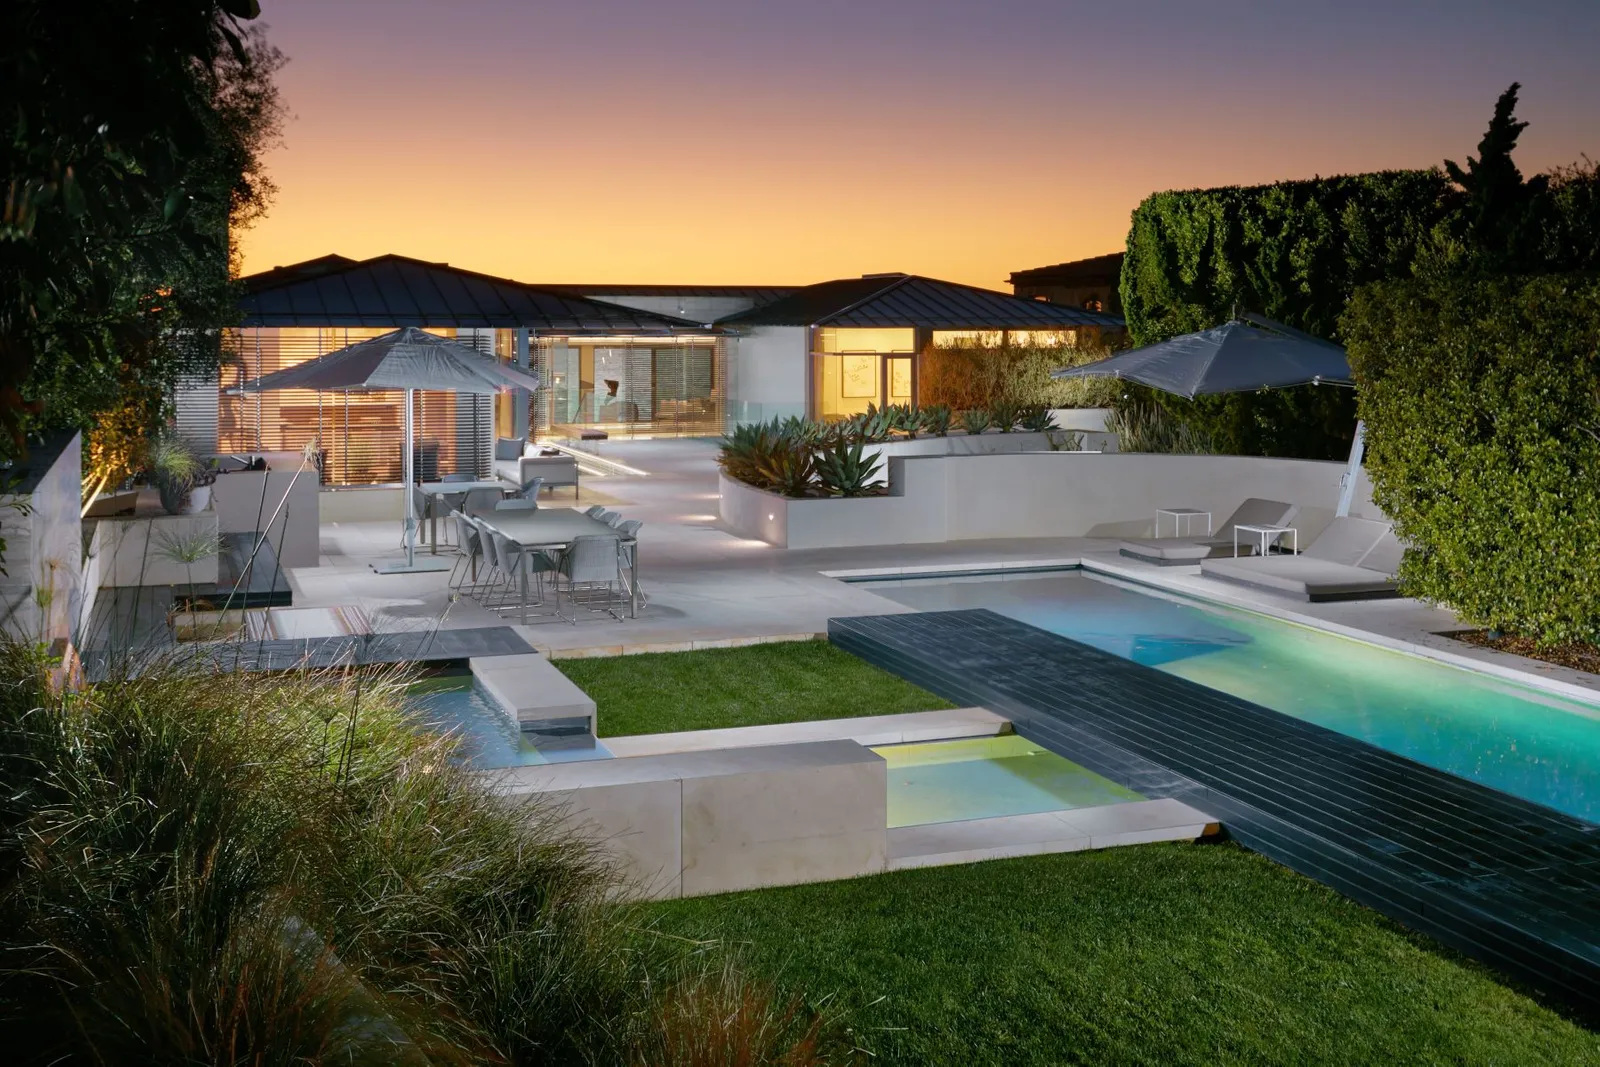 LAGUNA BEACH CA – Gorgeous villa with private access to an ocean pool